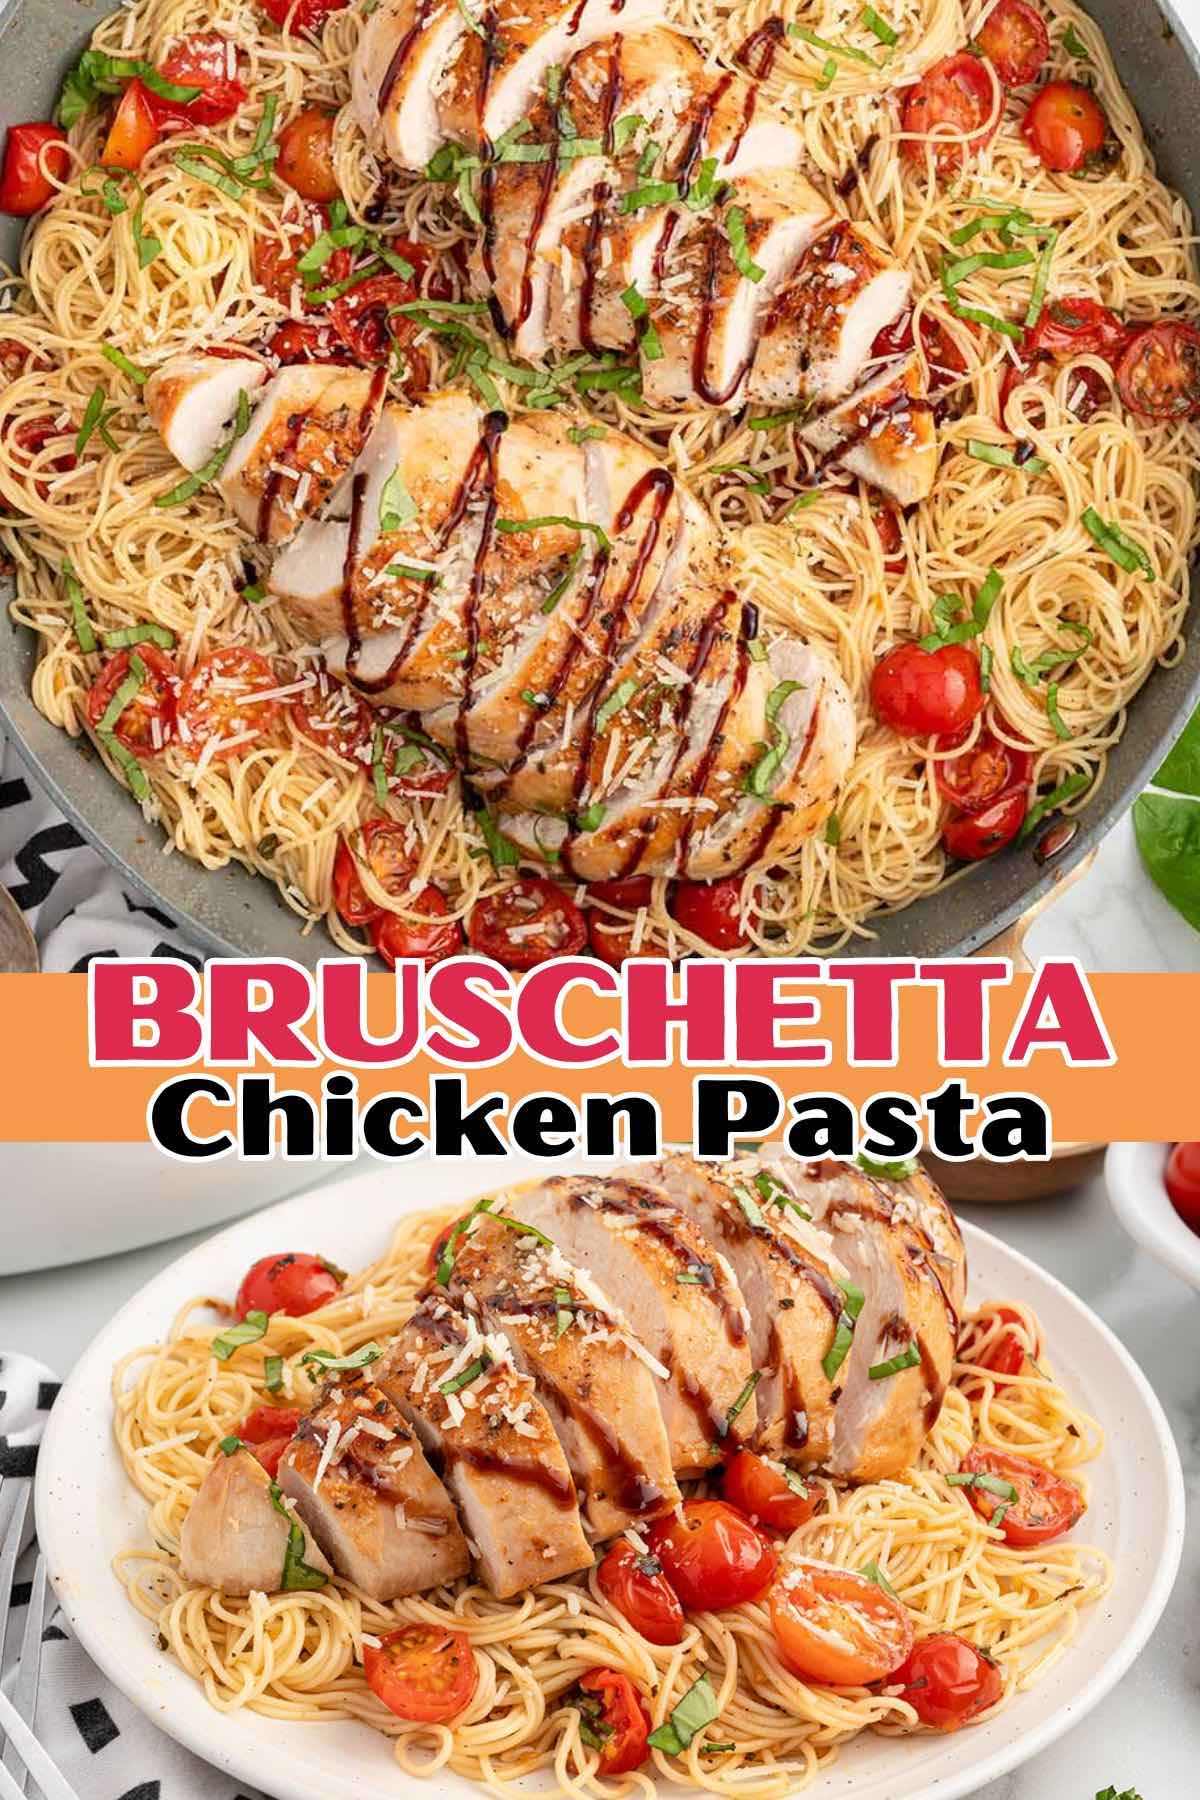 Bruschetta Chicken Pasta pin.